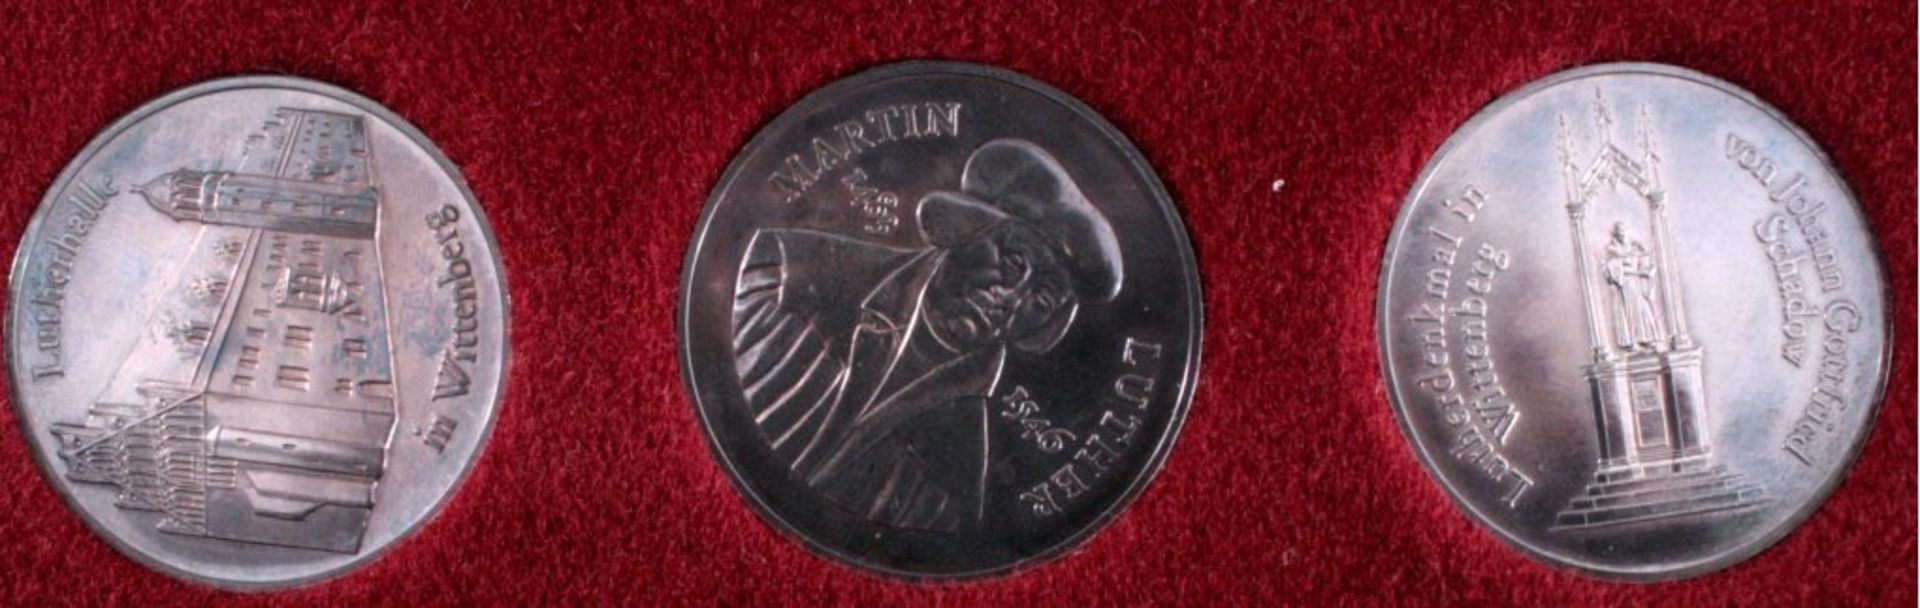 3 Medaillen DDR, Silber, Martin Luther 1983Auflage 500 Stück, jede ca. 32,4g, Durchmesser 40mm,